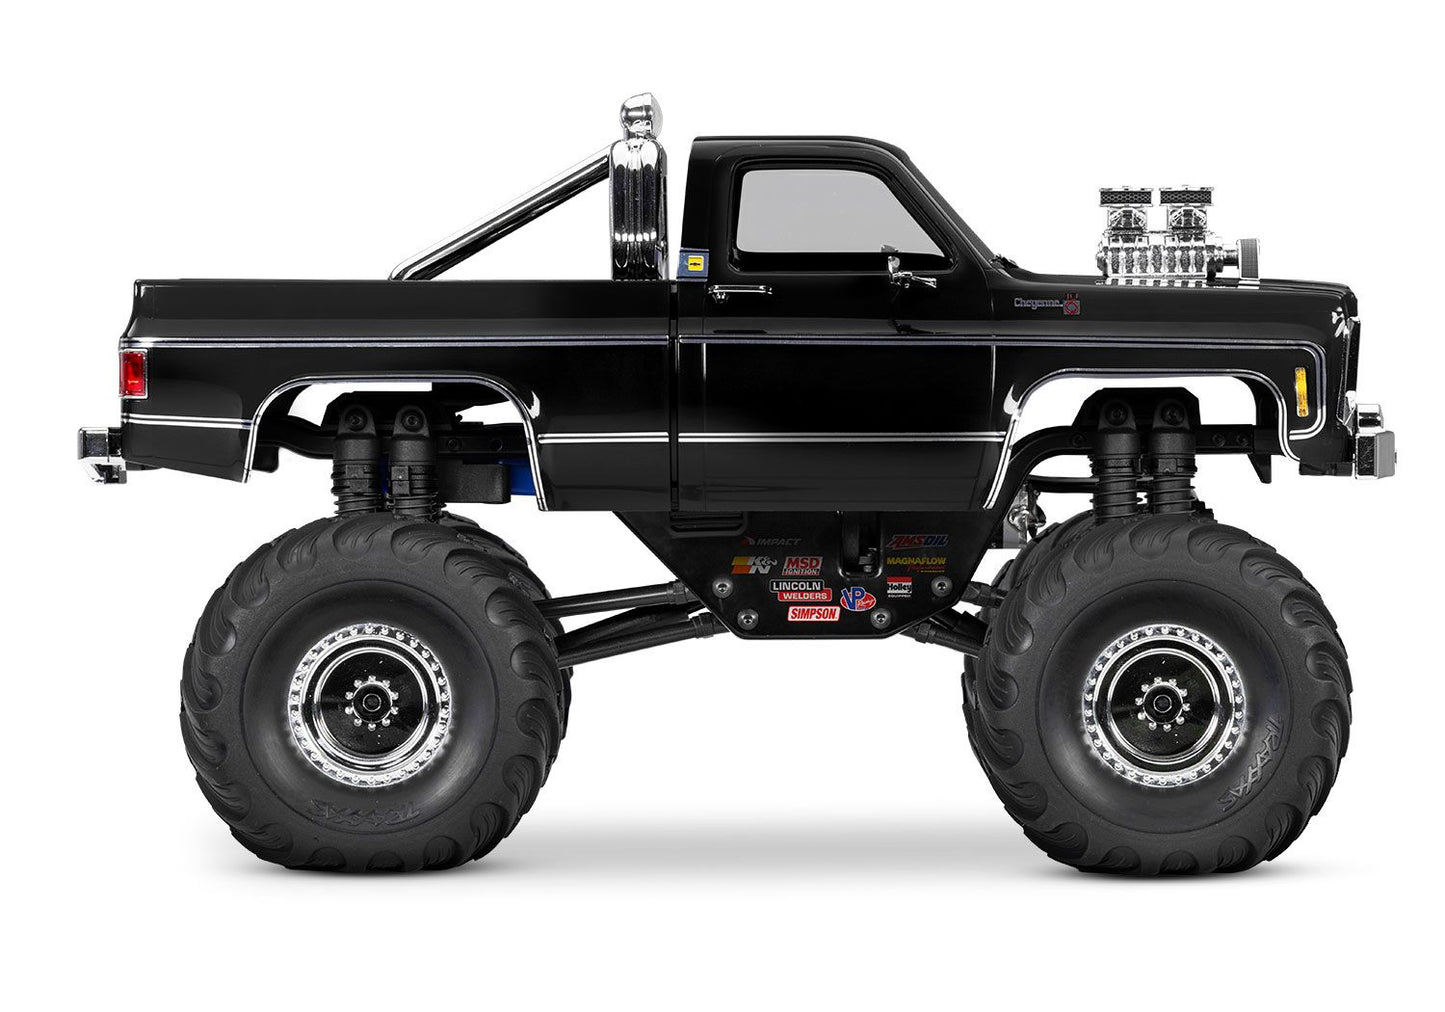 98064-1 1/18 Scale TRX-4MT Chevrolet K10 Monster Truck Black